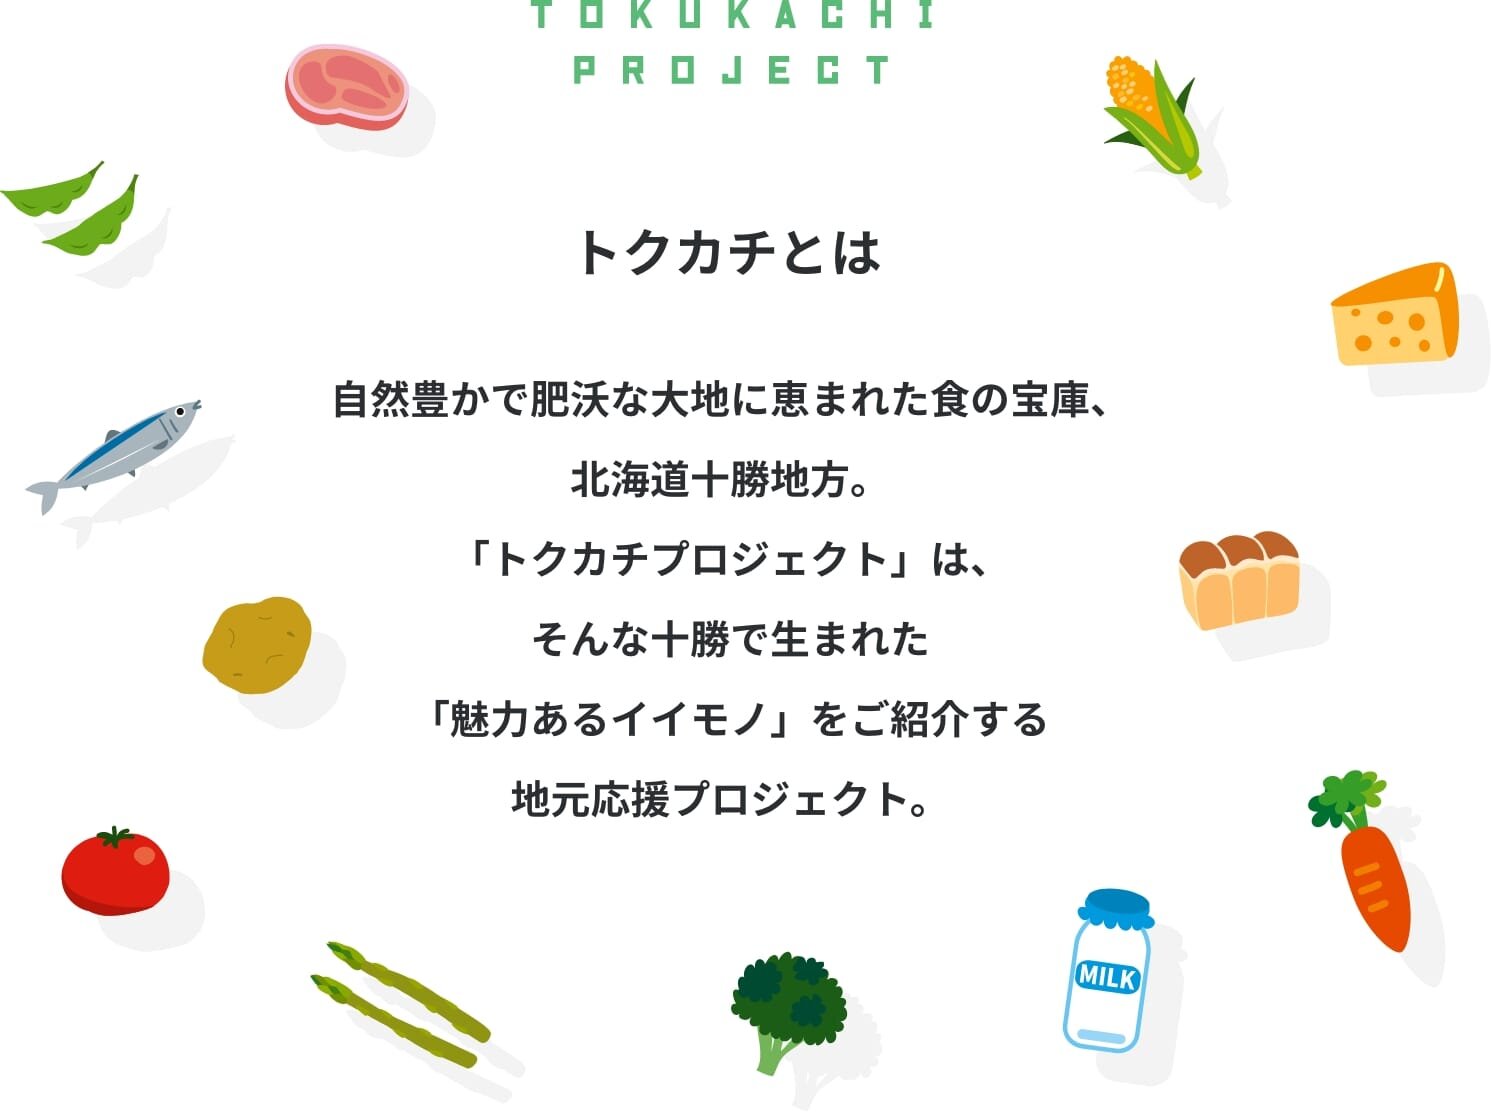 トクカチとは 自然豊かで肥沃な大地に恵まれた食の宝庫、北海道十勝地方。「トクカチプロジェクト」は、そんな十勝で生まれた「魅力あるイイモノ」をご紹介する地元応援プロジェクト。